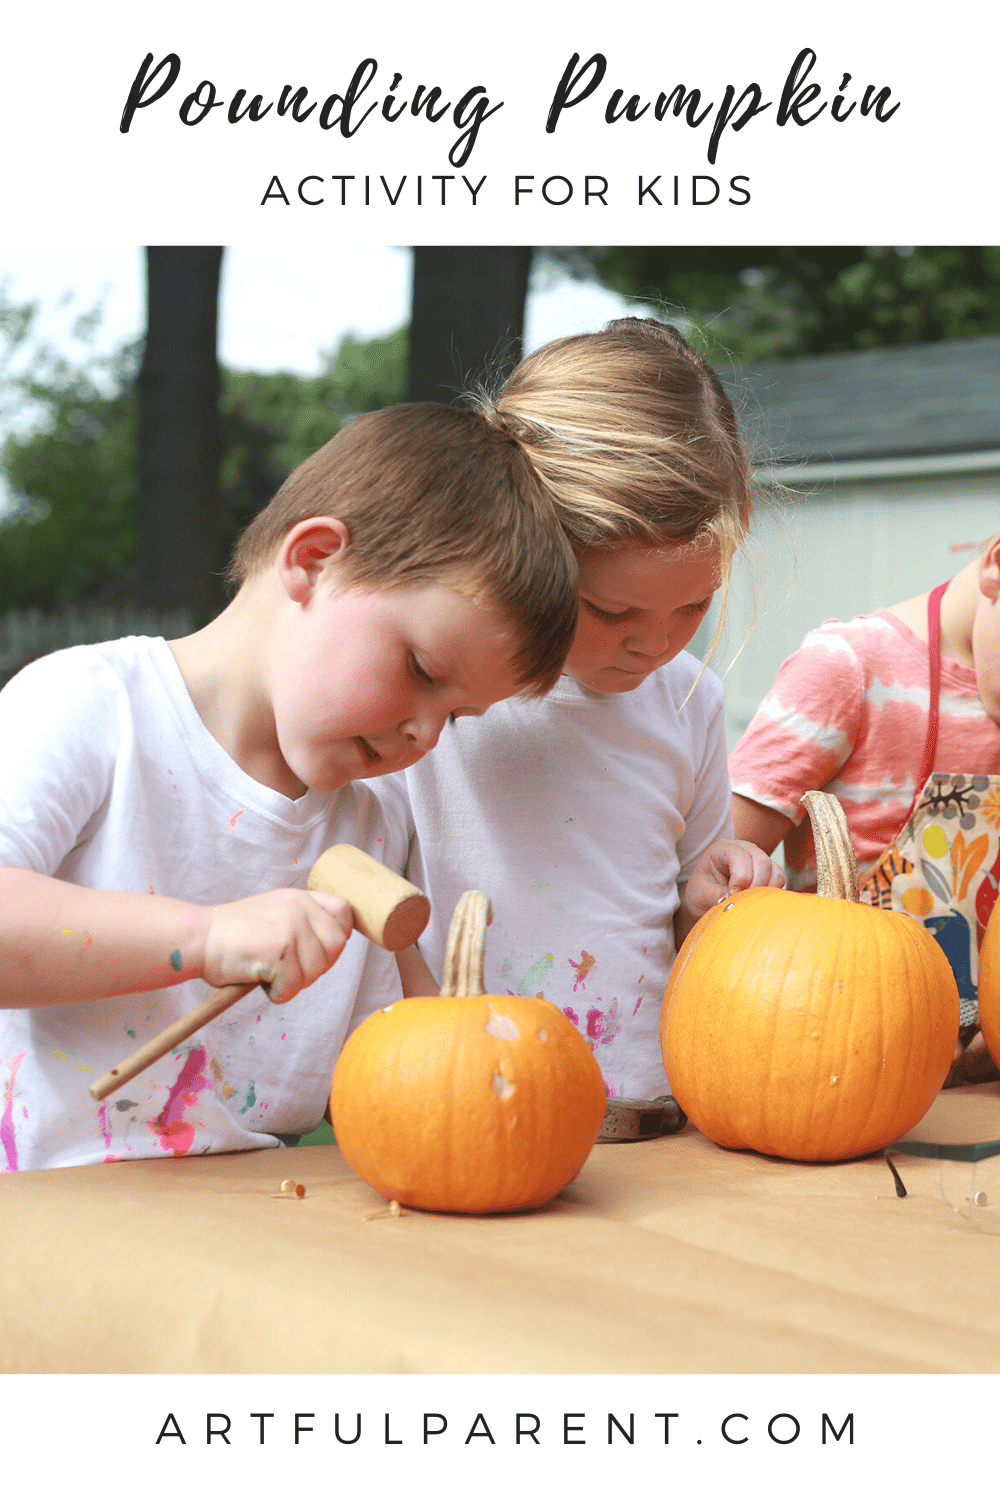 A Pounding Pumpkin Activity for Kids